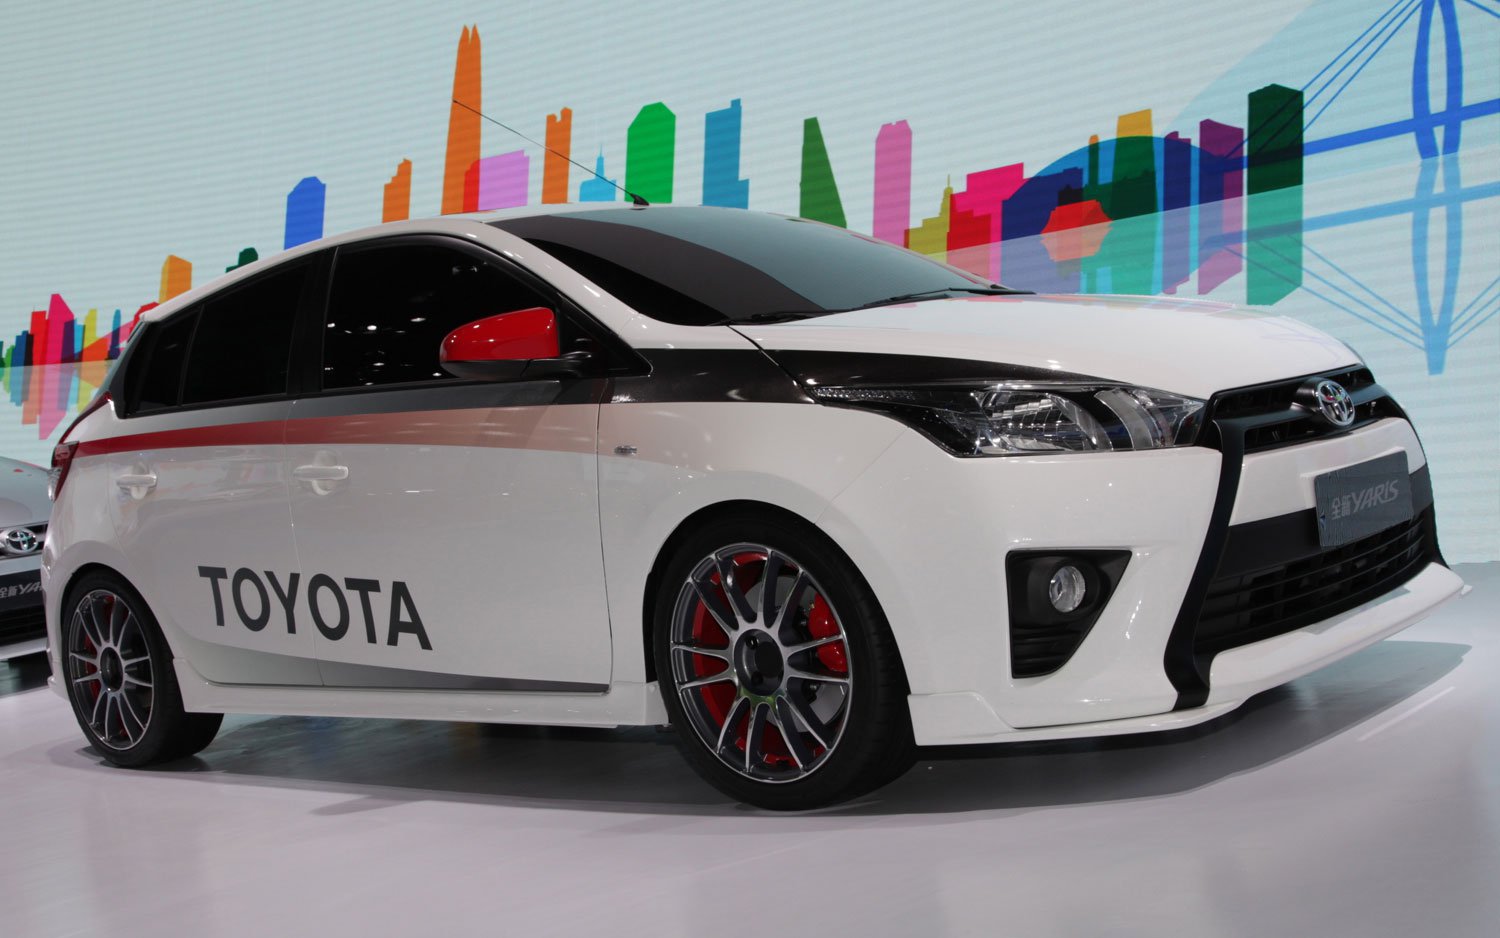 Foto Modifikasi Mobil Toyota All New Yaris Small Hatchback Terbaik